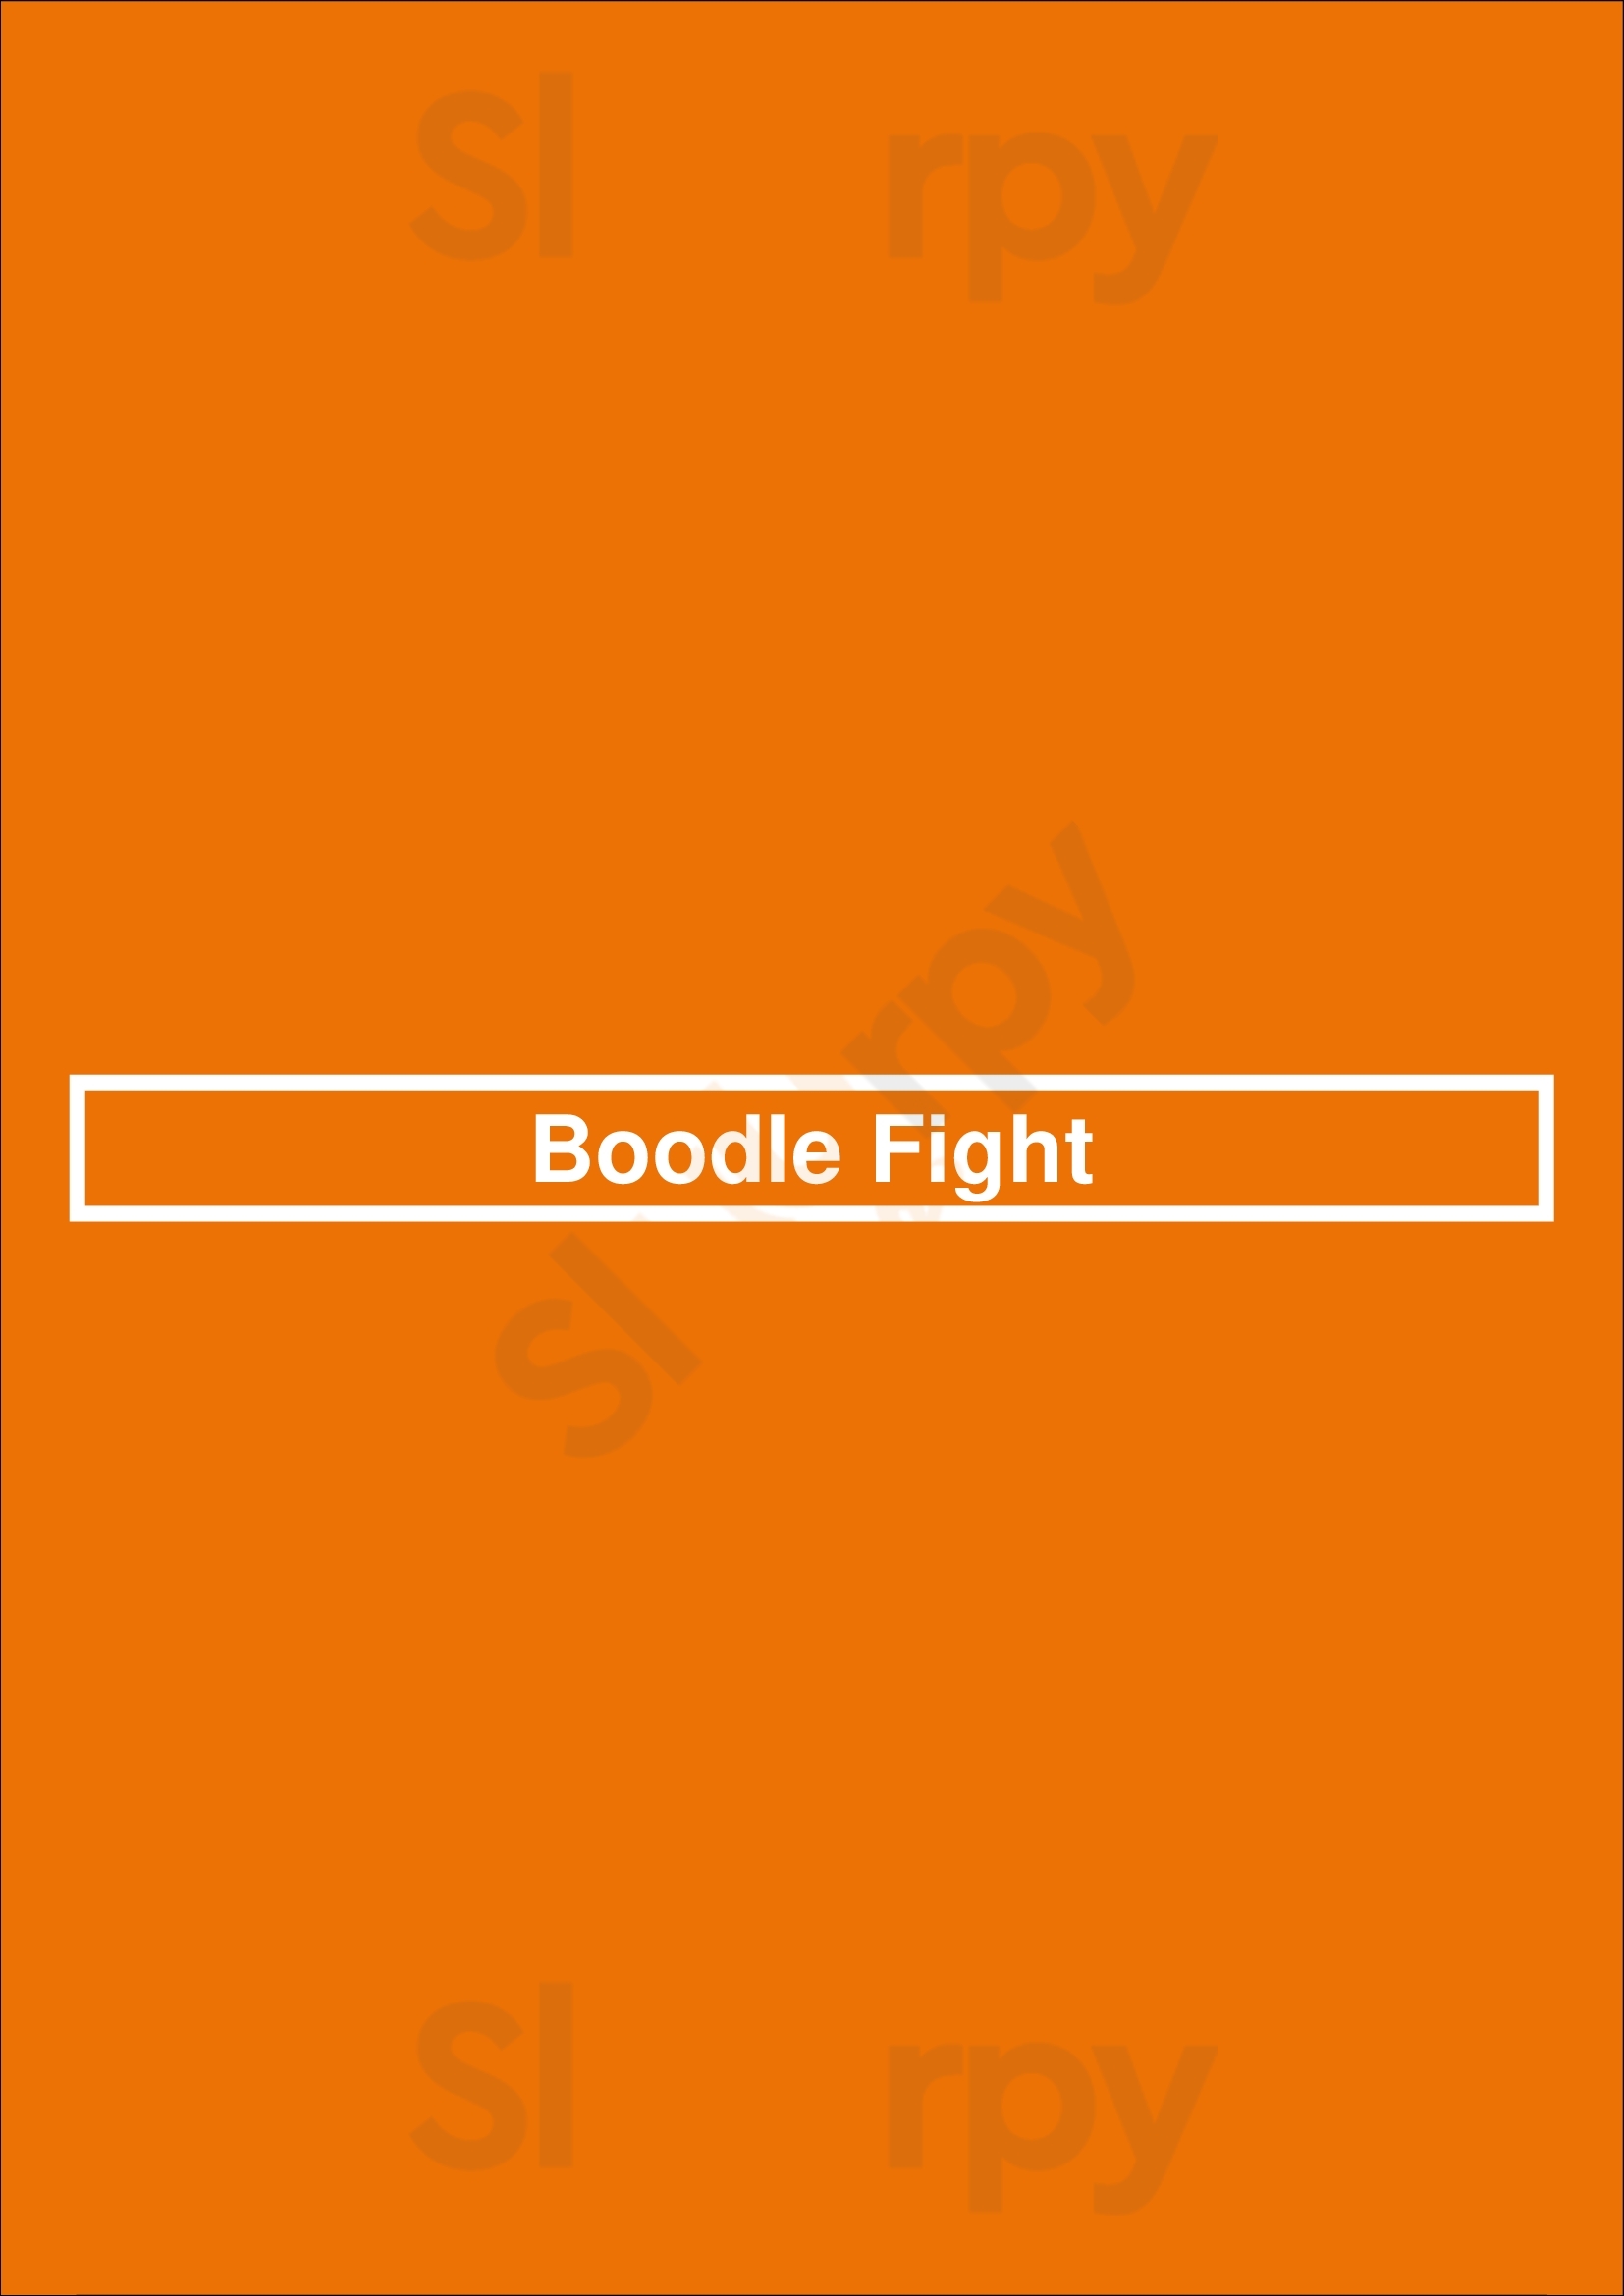 Boodle Fight Toronto Menu - 1